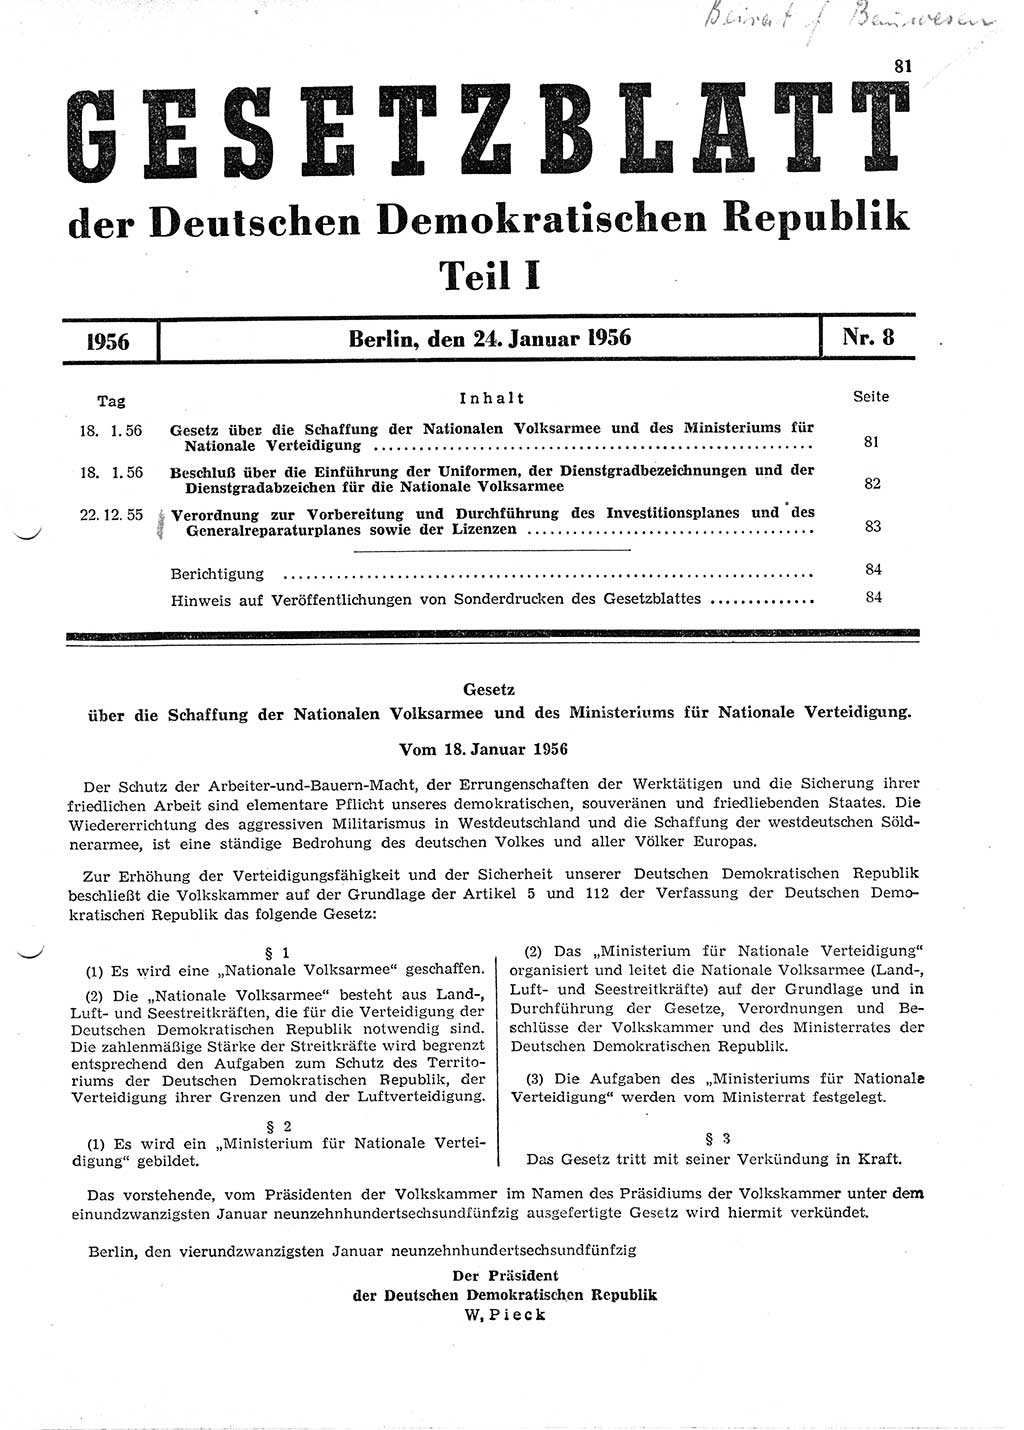 Gesetzblatt (GBl.) der Deutschen Demokratischen Republik (DDR) Teil Ⅰ 1956, Seite 81 (GBl. DDR Ⅰ 1956, S. 81)